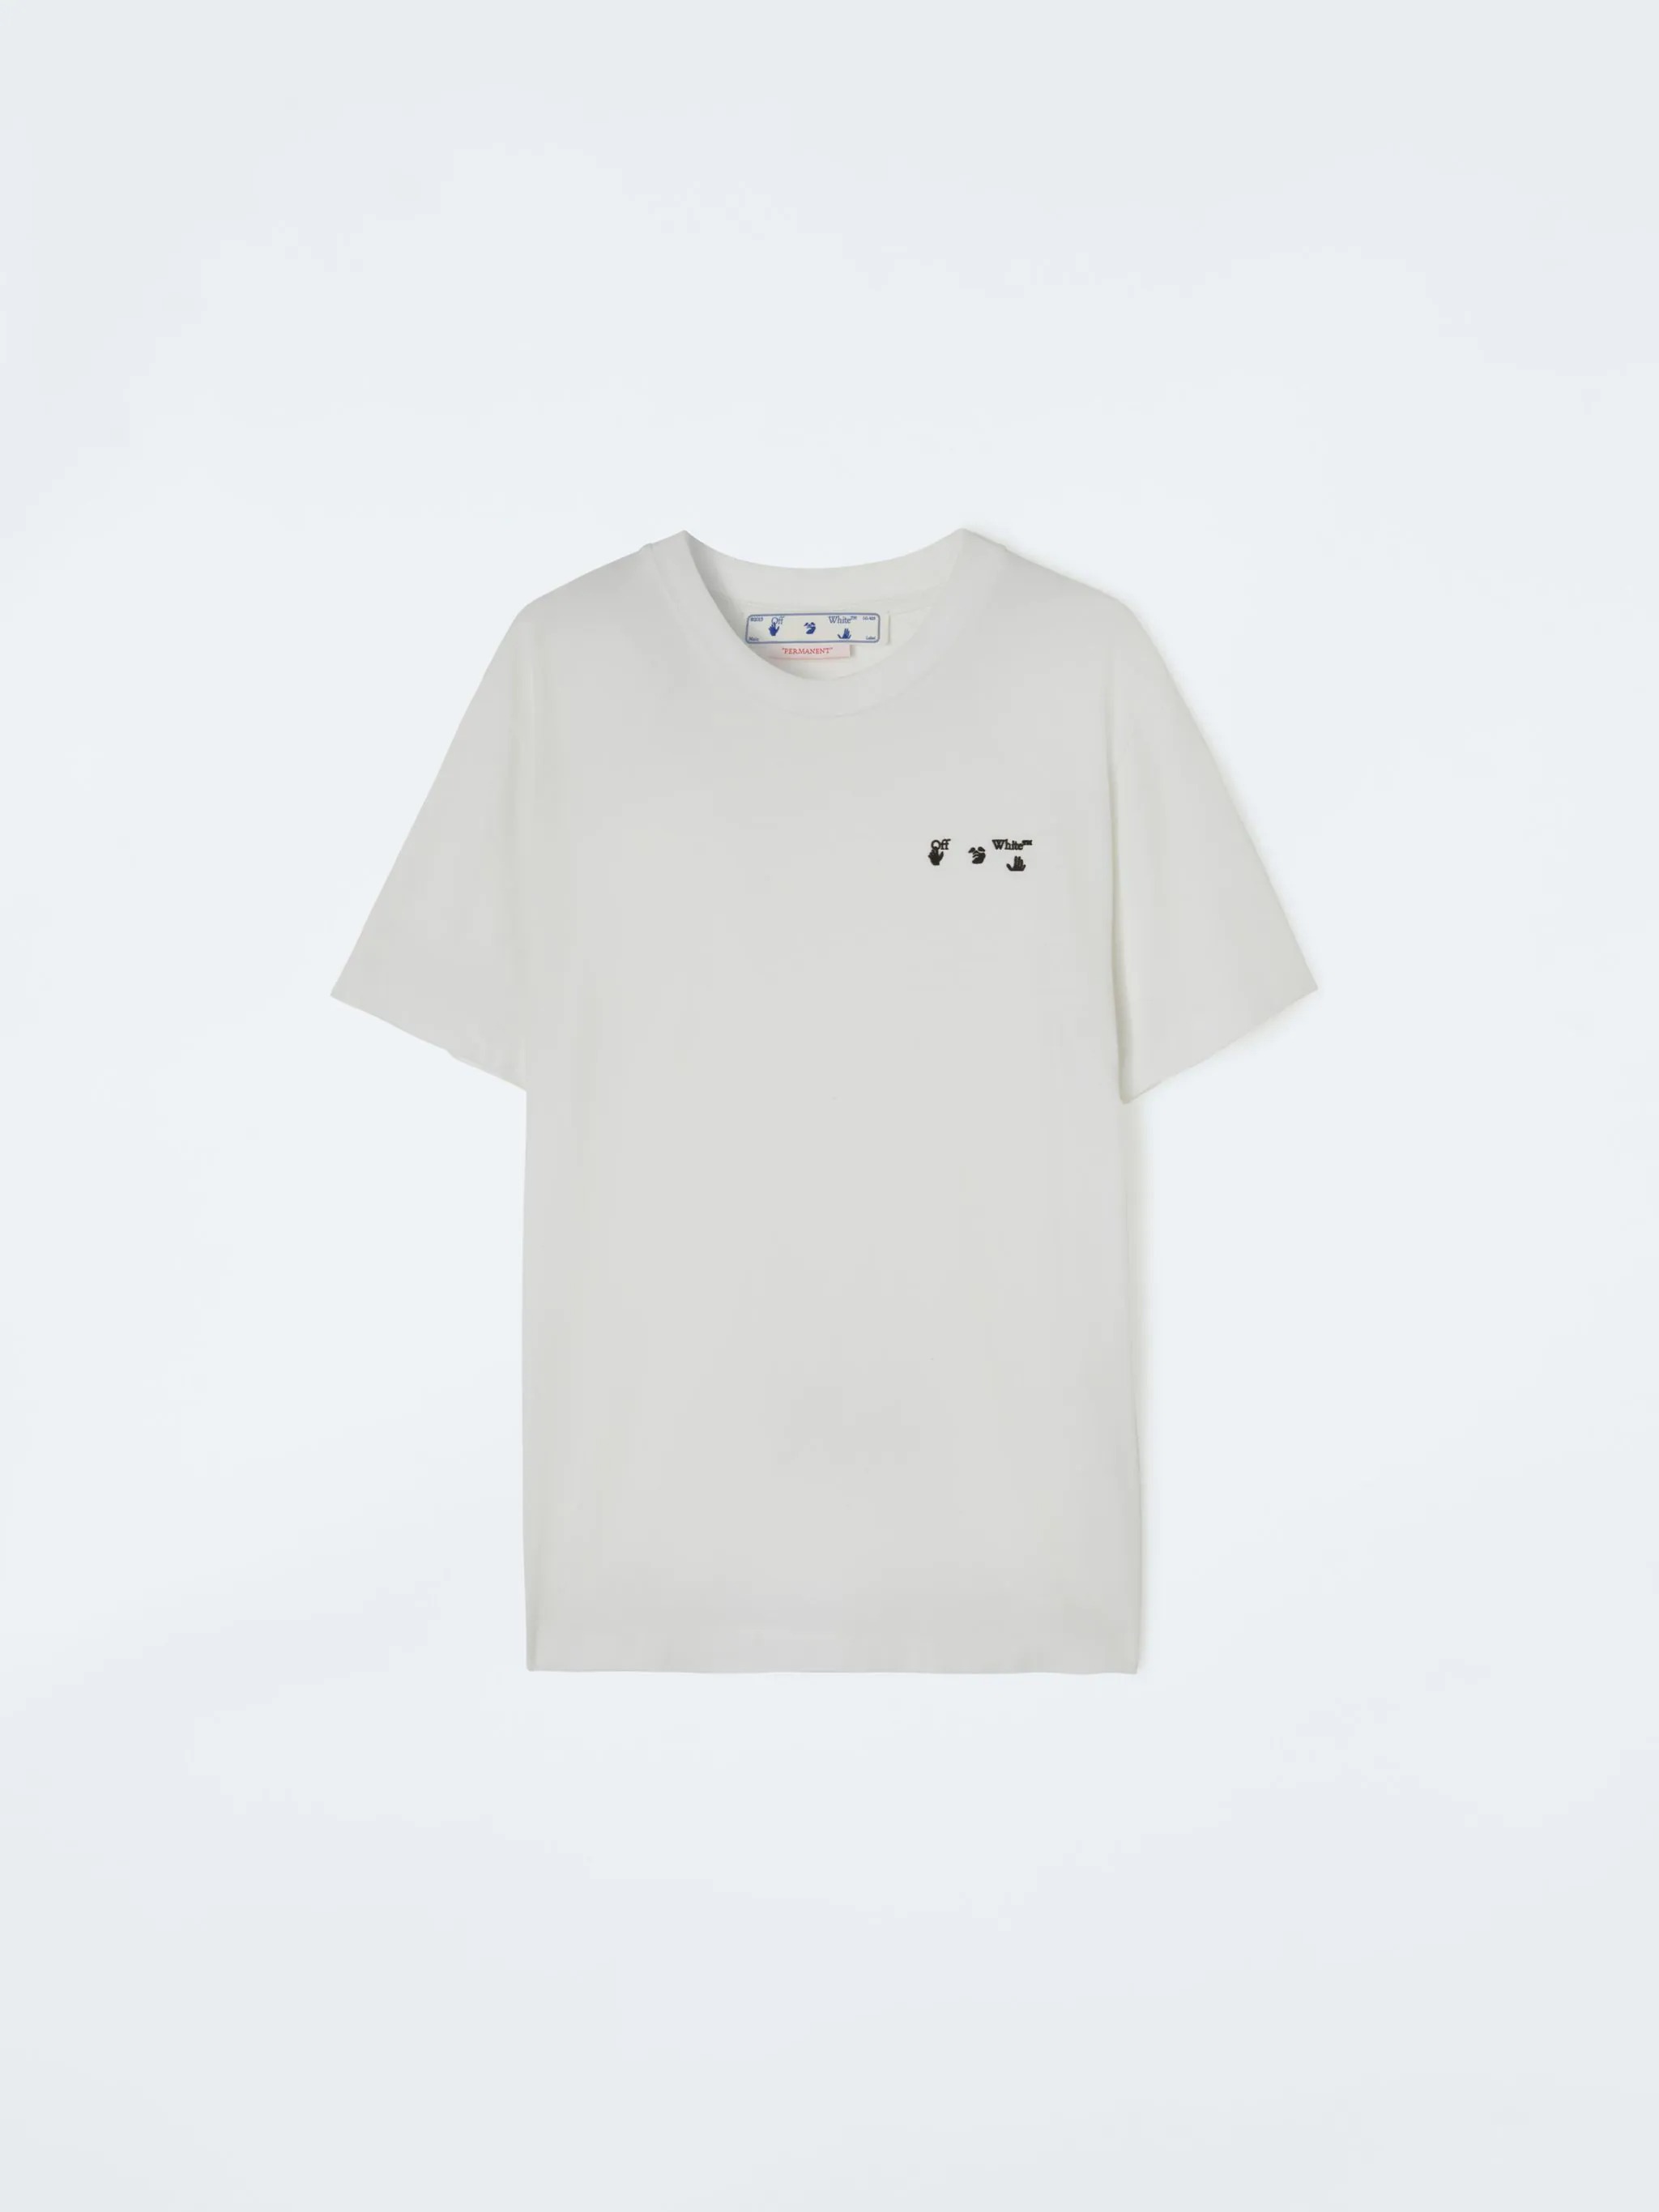 大きな割引 off-white ロゴTシャツ Tシャツ/カットソー(半袖/袖なし)